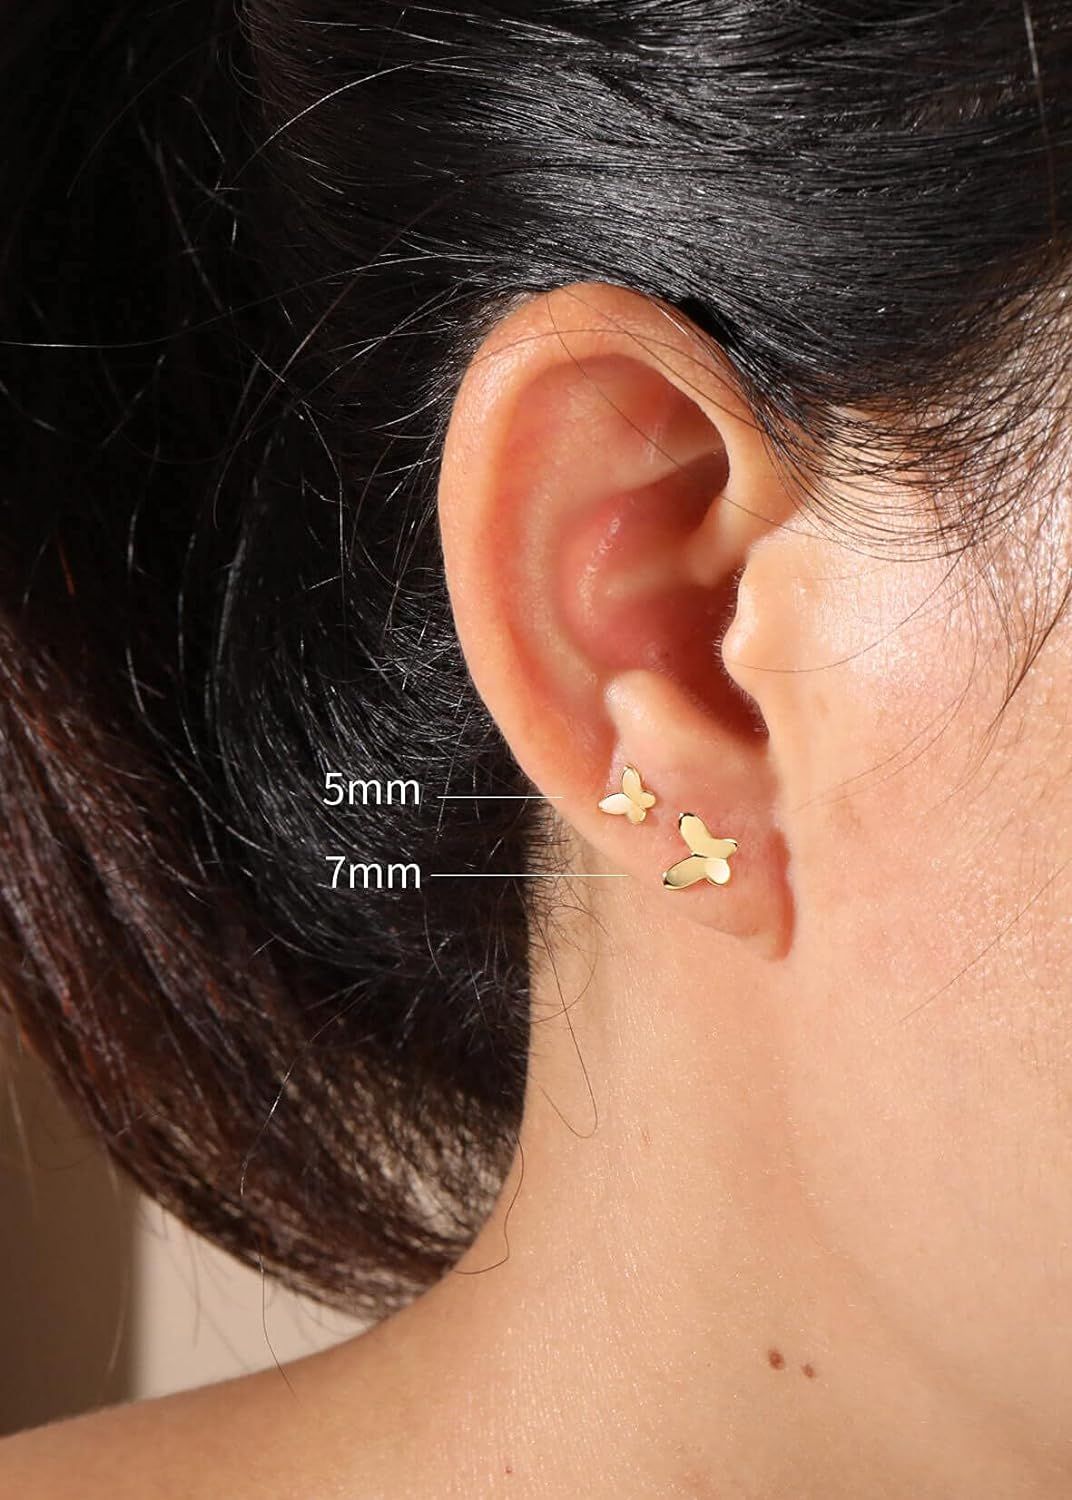 Butterfly Earrings Sterling Silver Tiny Butterfly Stud Earrings for Women Gold Minimalist Earring... | Amazon (US)